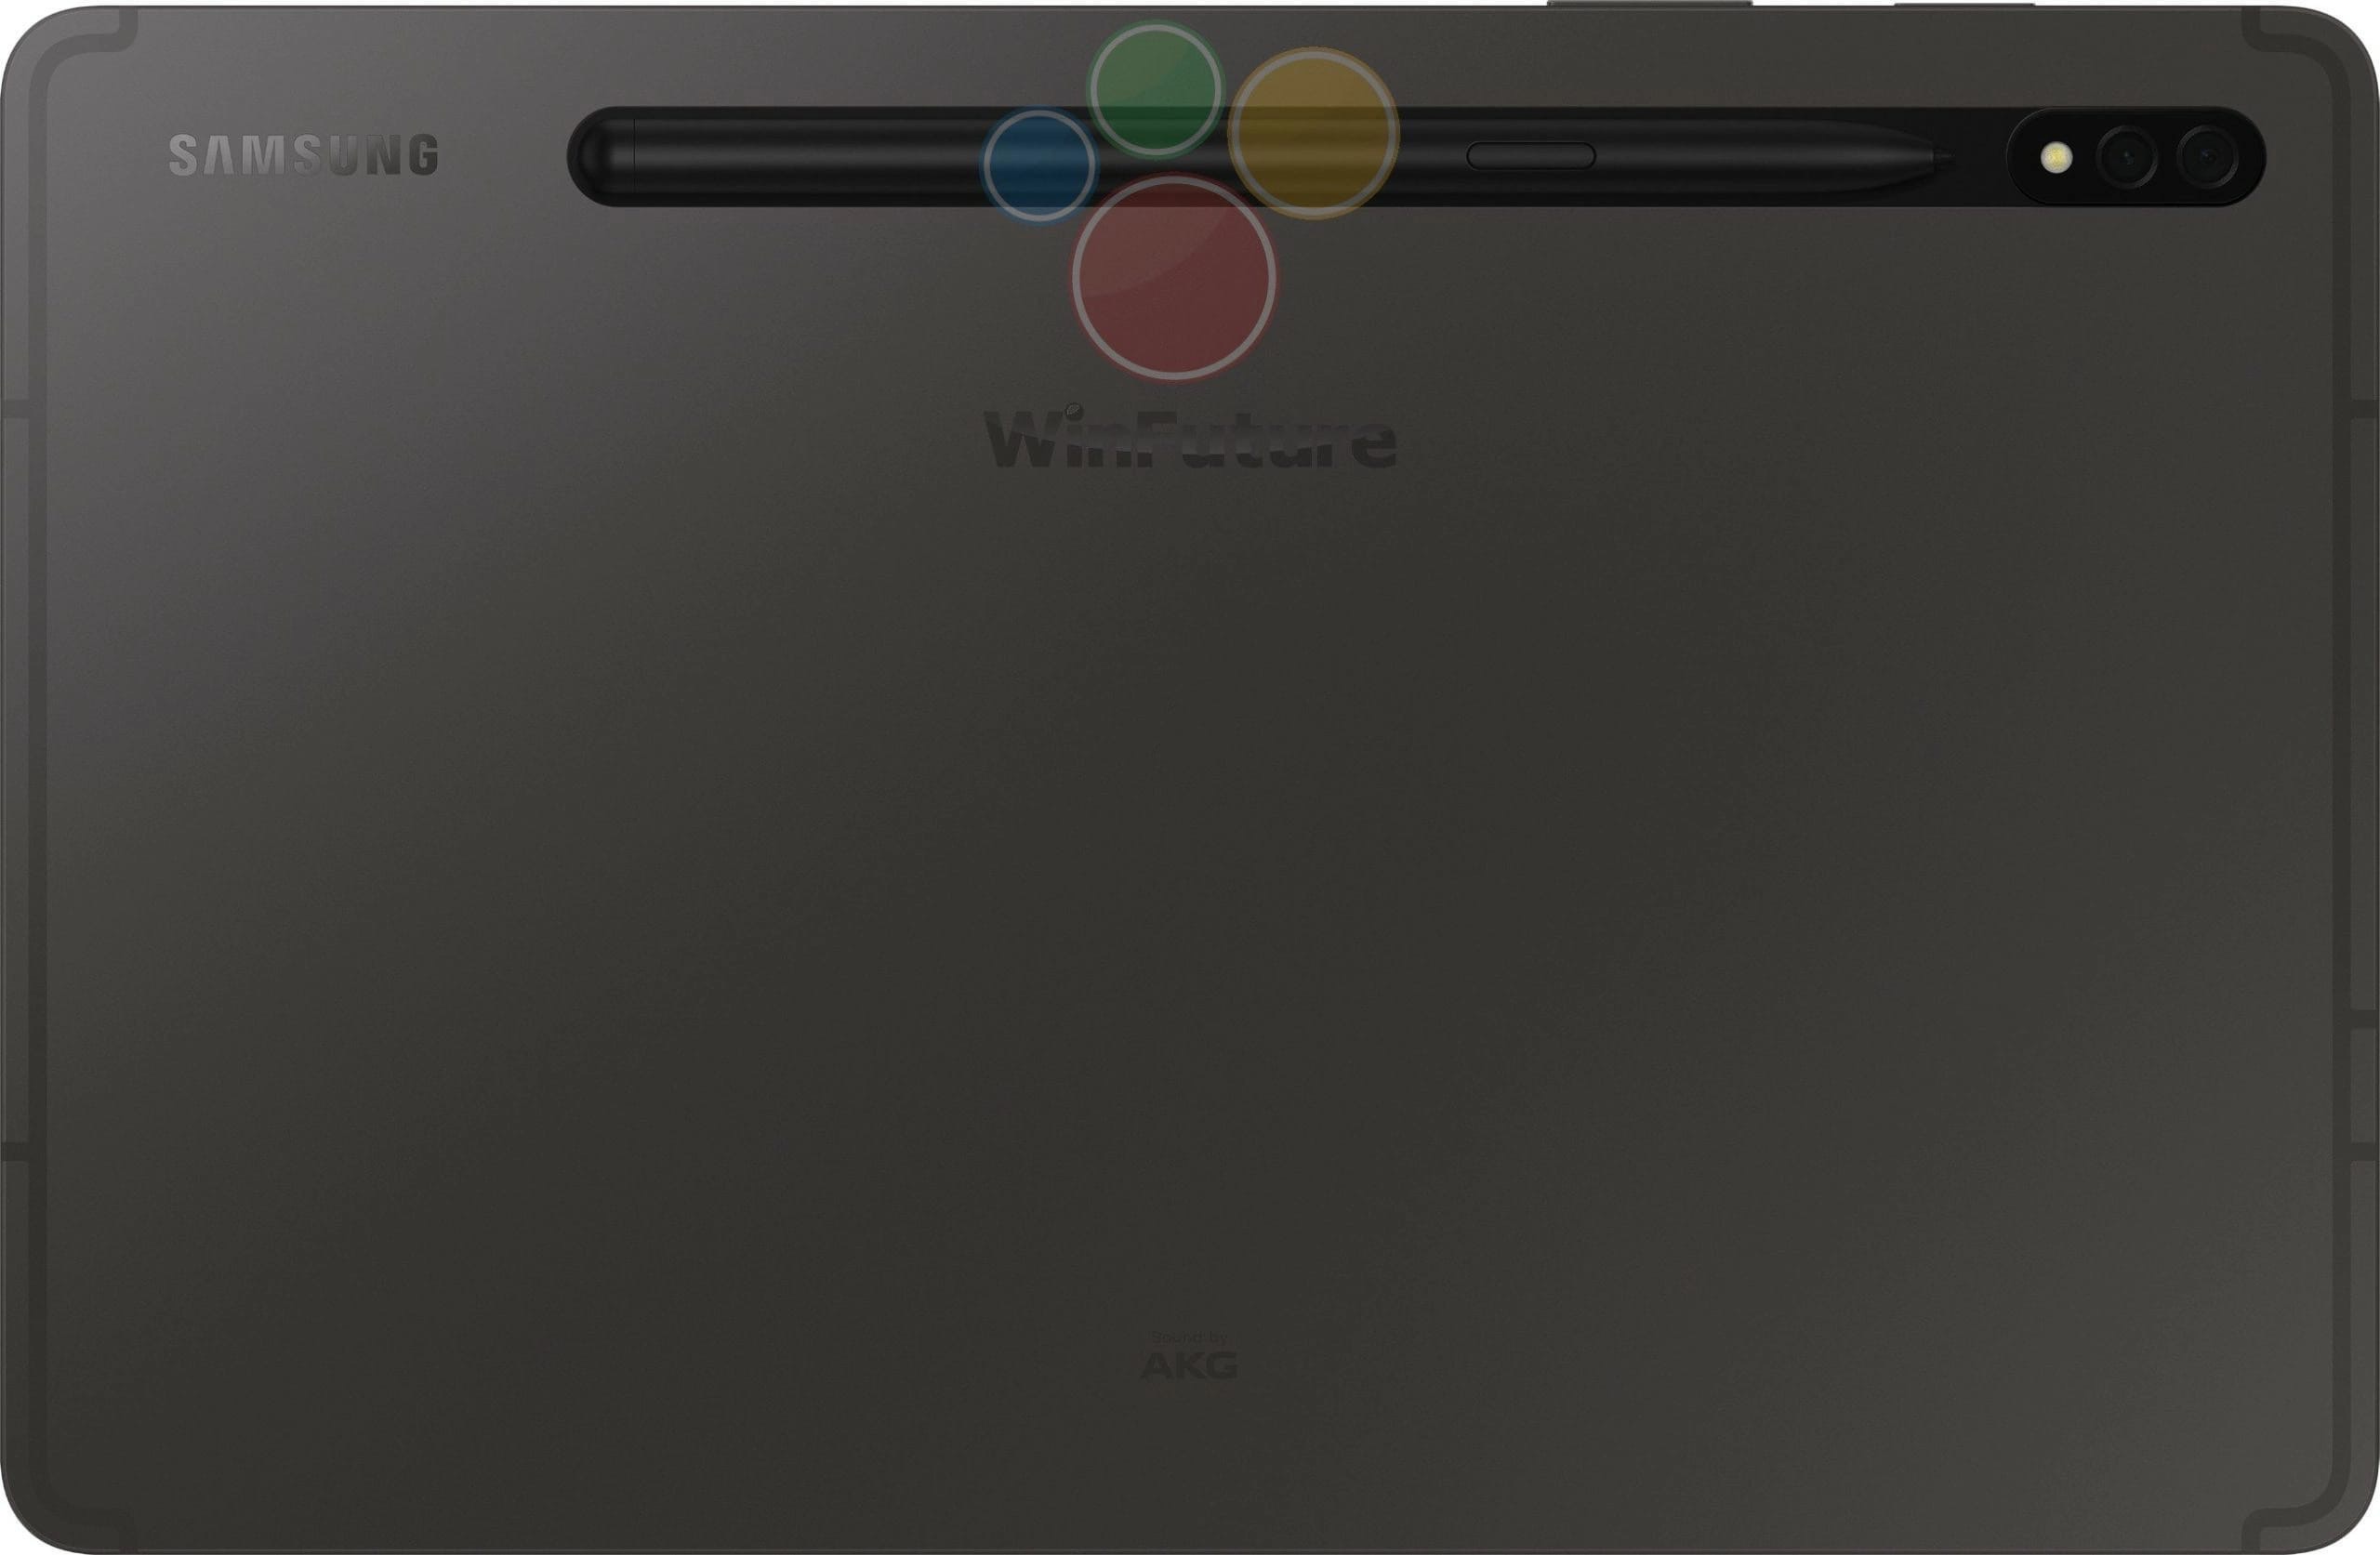 Немецкий портал WinFuture «слил» фото новых флагманских планшетов Samsung.